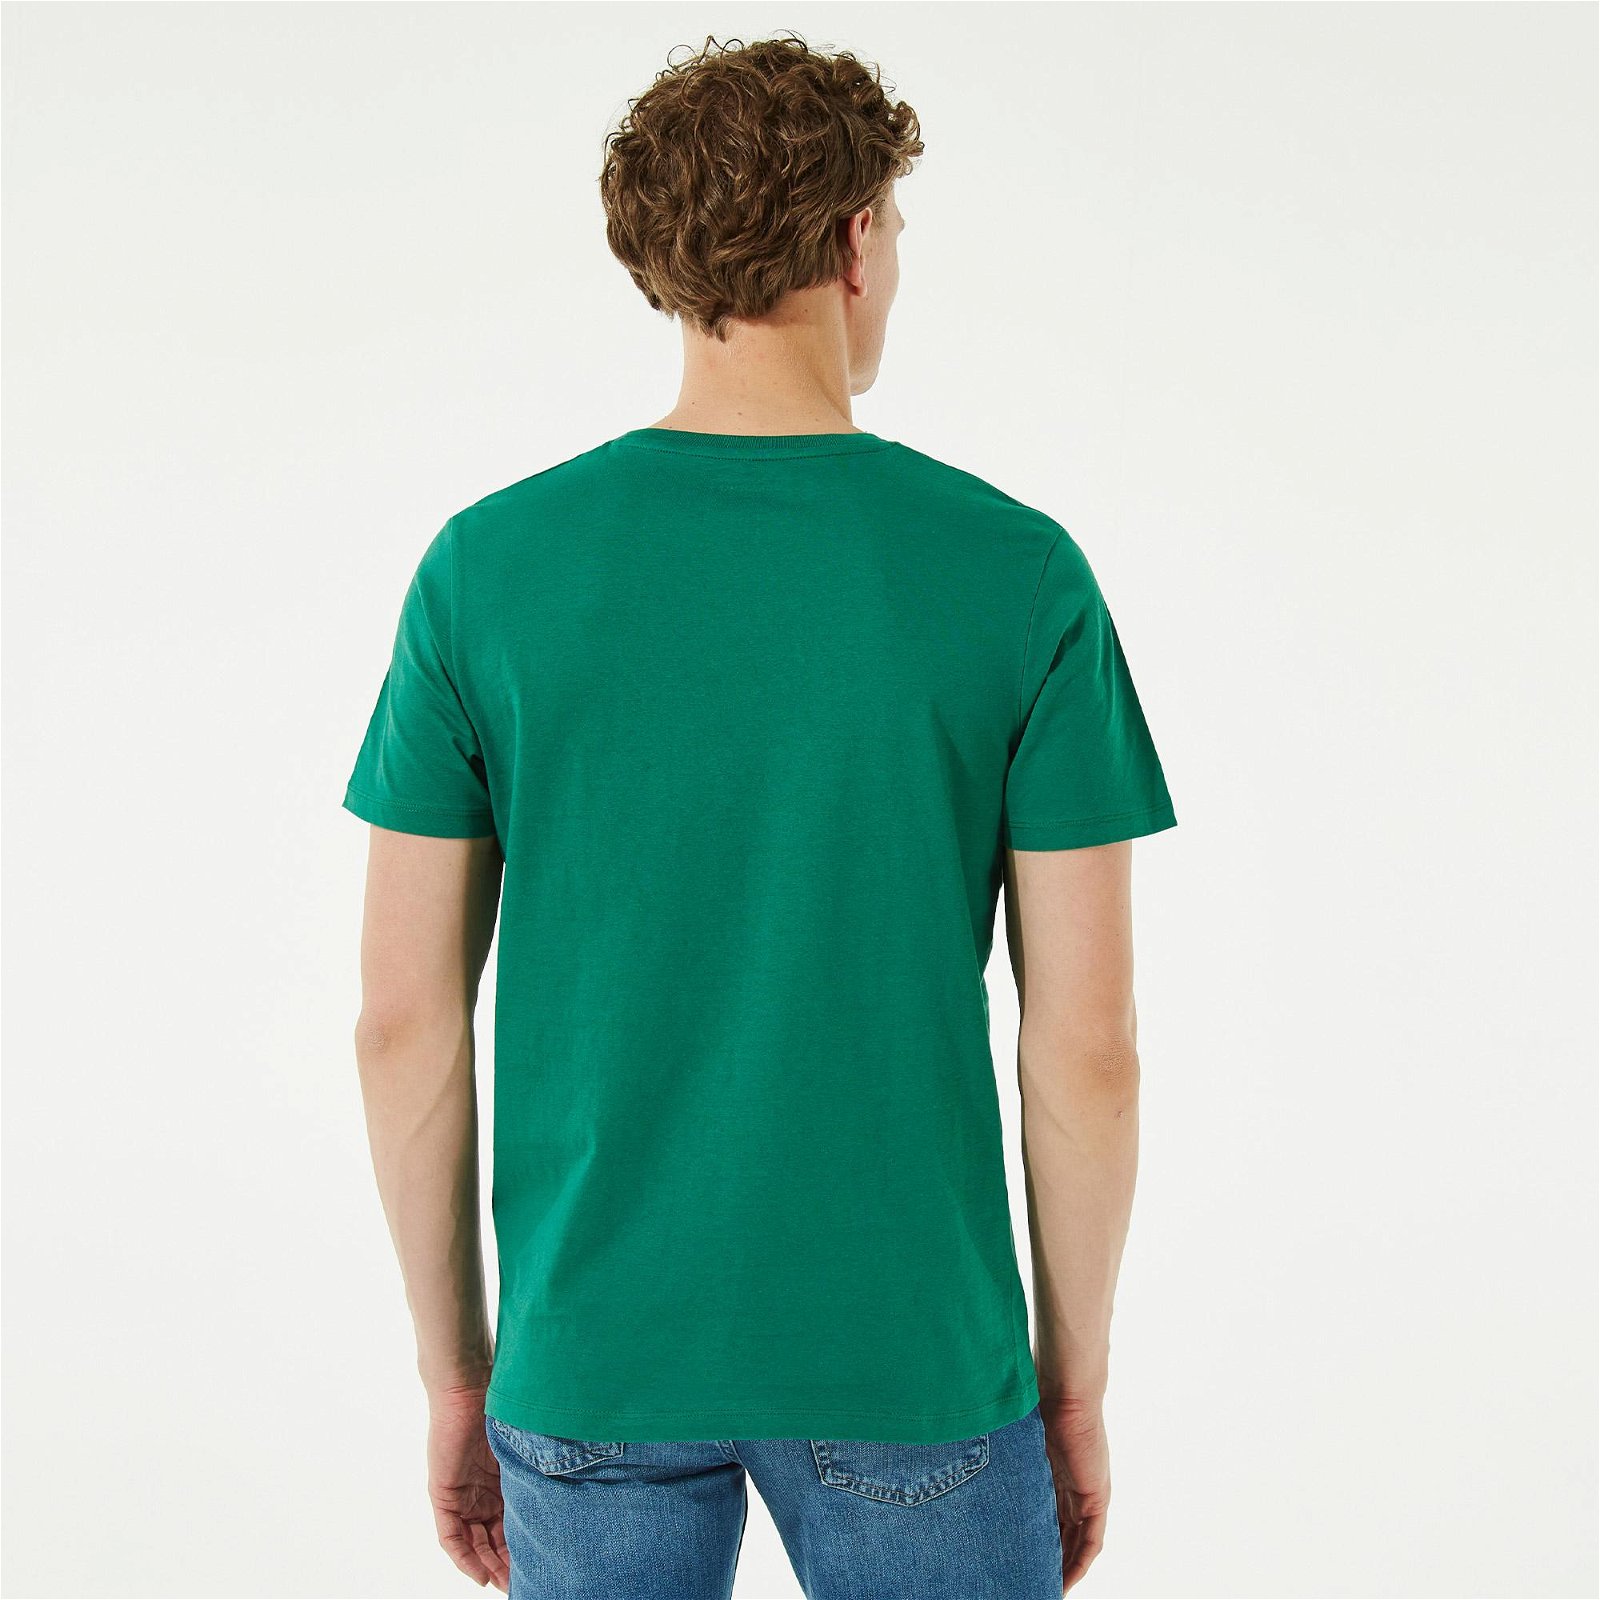 Jack & Jones Conate Crew Neck Erkek Yeşil T-Shirt